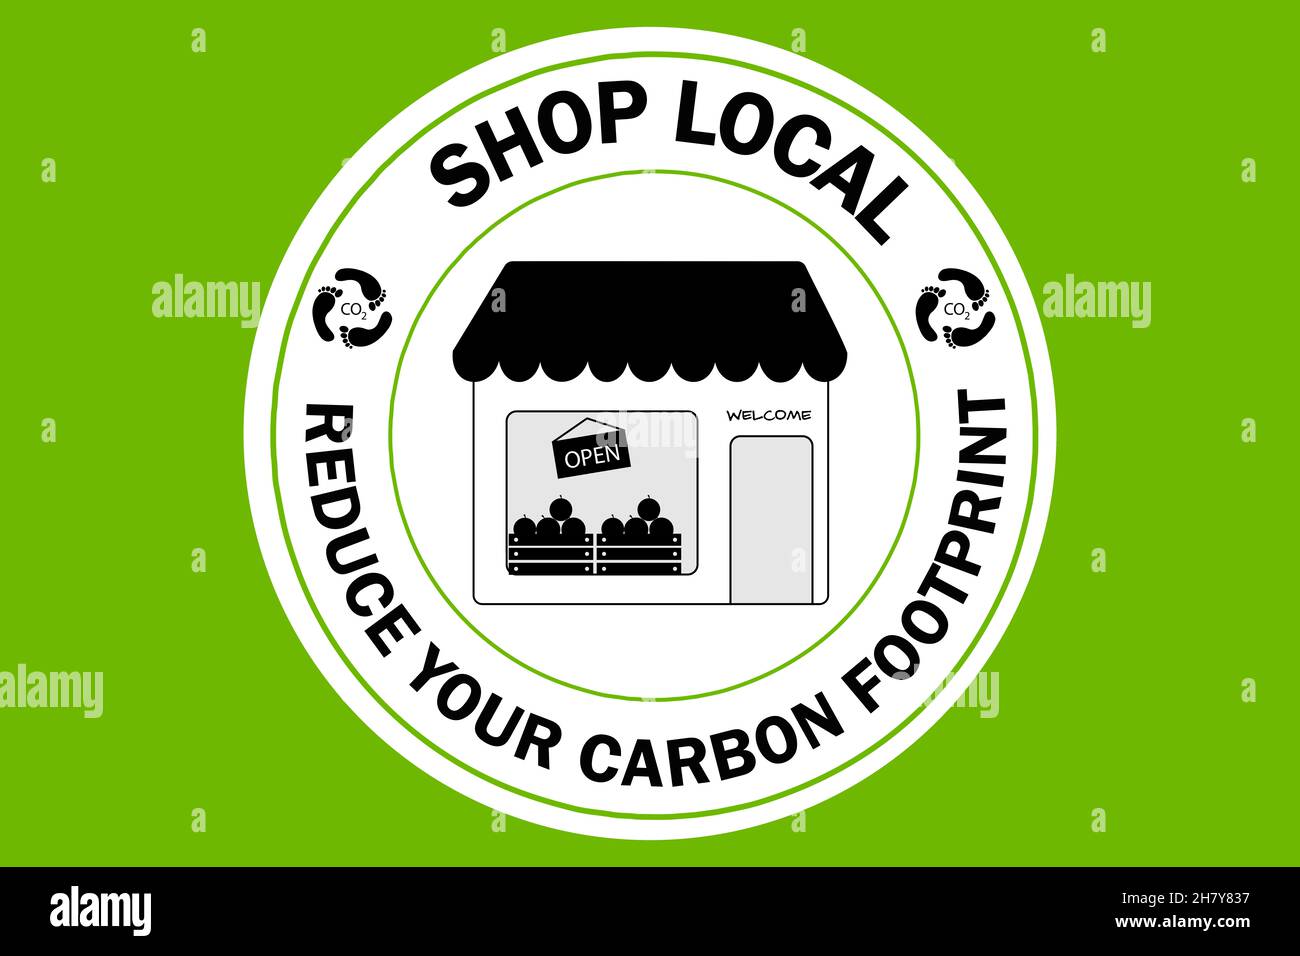 Boutique locale réduire l'empreinte carbone, le logo, la consommation durable et éthique Banque D'Images